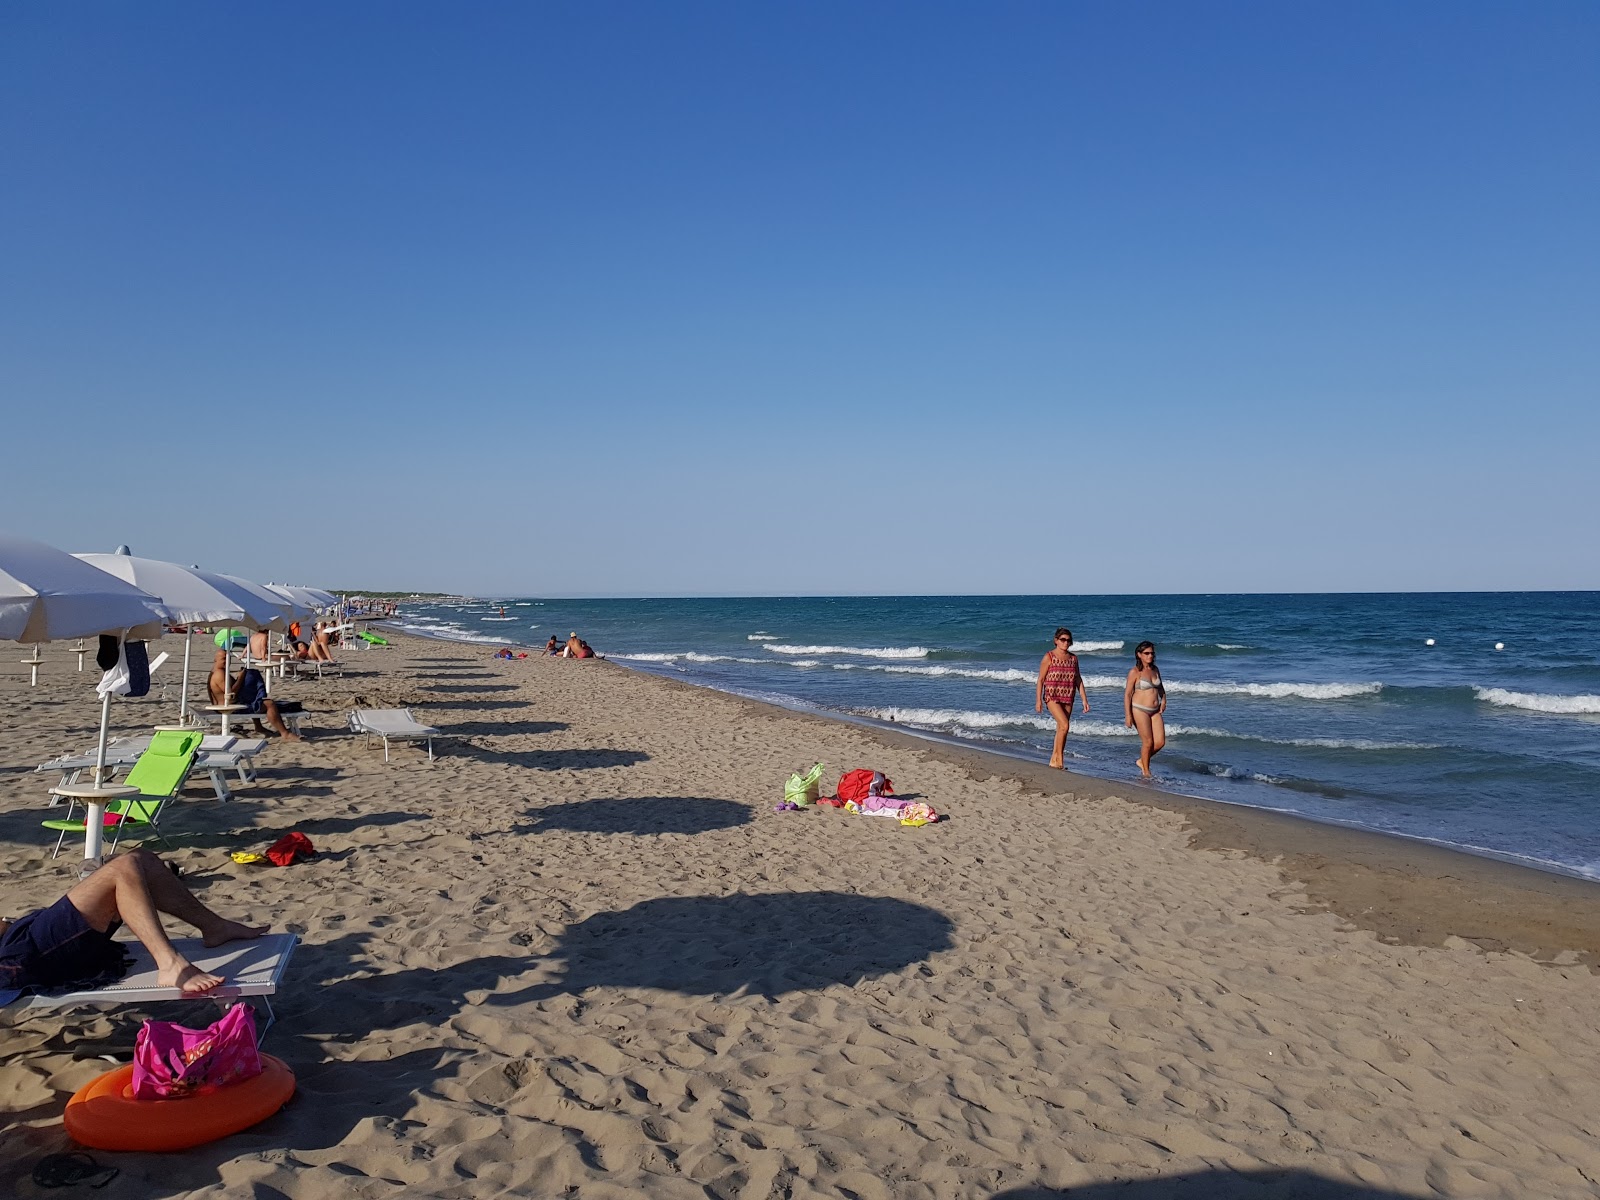 Lido di Scanzano beach'in fotoğrafı kahverengi kum yüzey ile